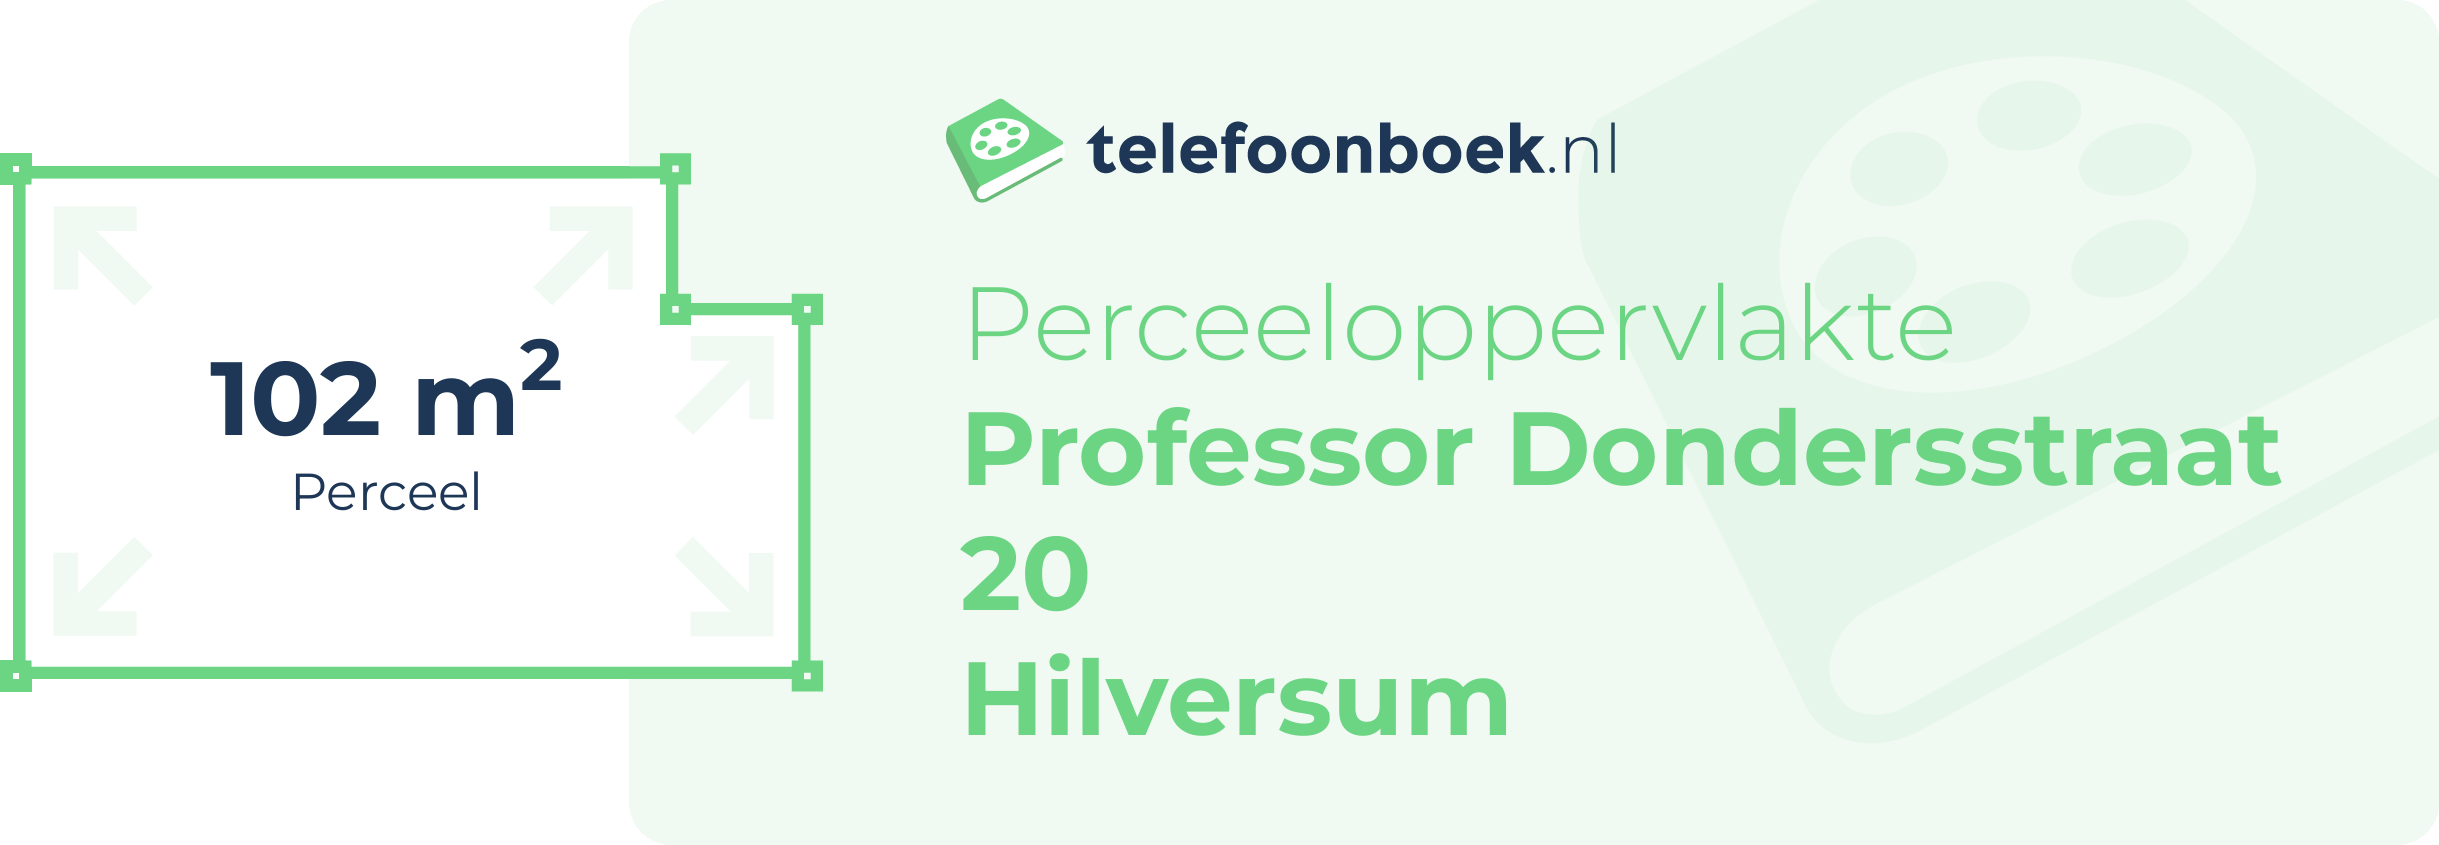 Perceeloppervlakte Professor Dondersstraat 20 Hilversum